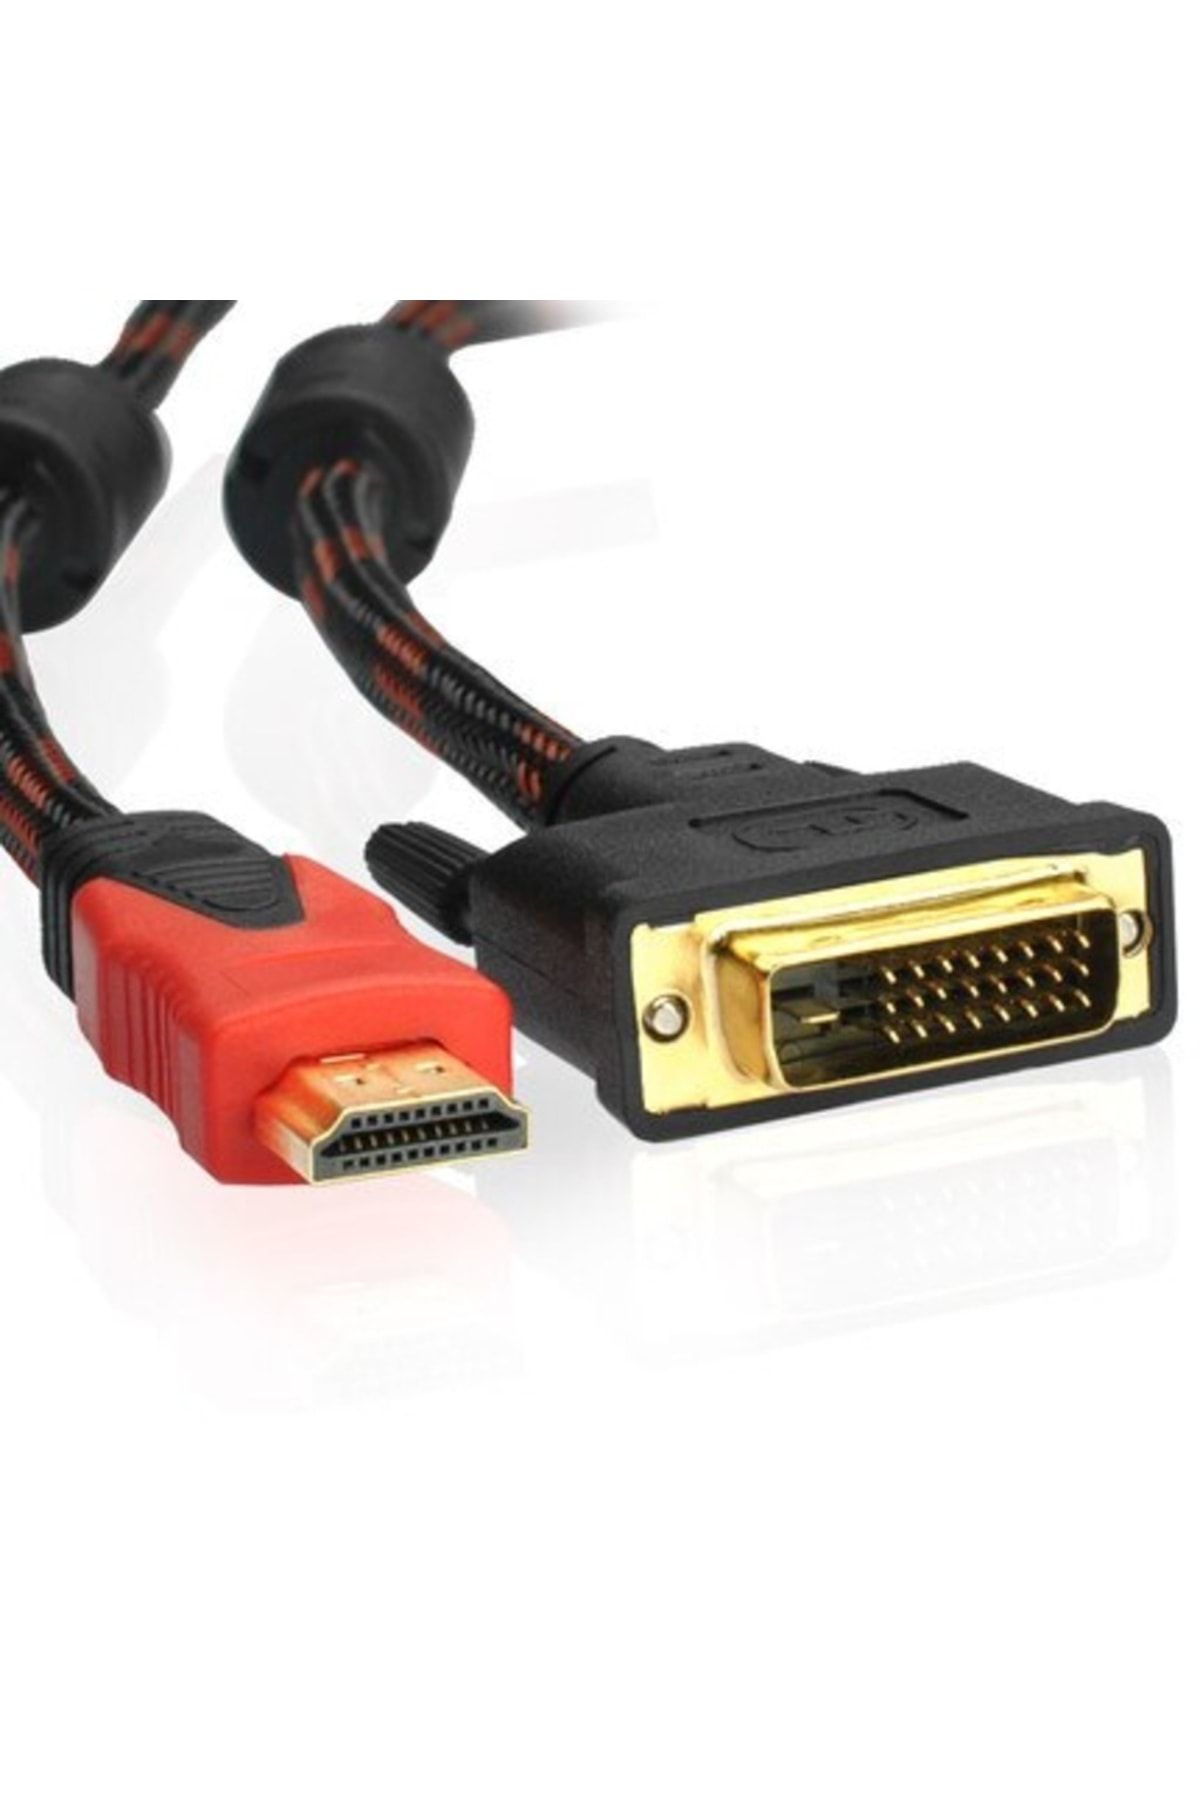 Genel Markalar Hdmi To Dvi Cable Örgü Kablo 24+1 Görüntü Aktarım Dönüştürücü Kablo Boyu 1.5 Metre